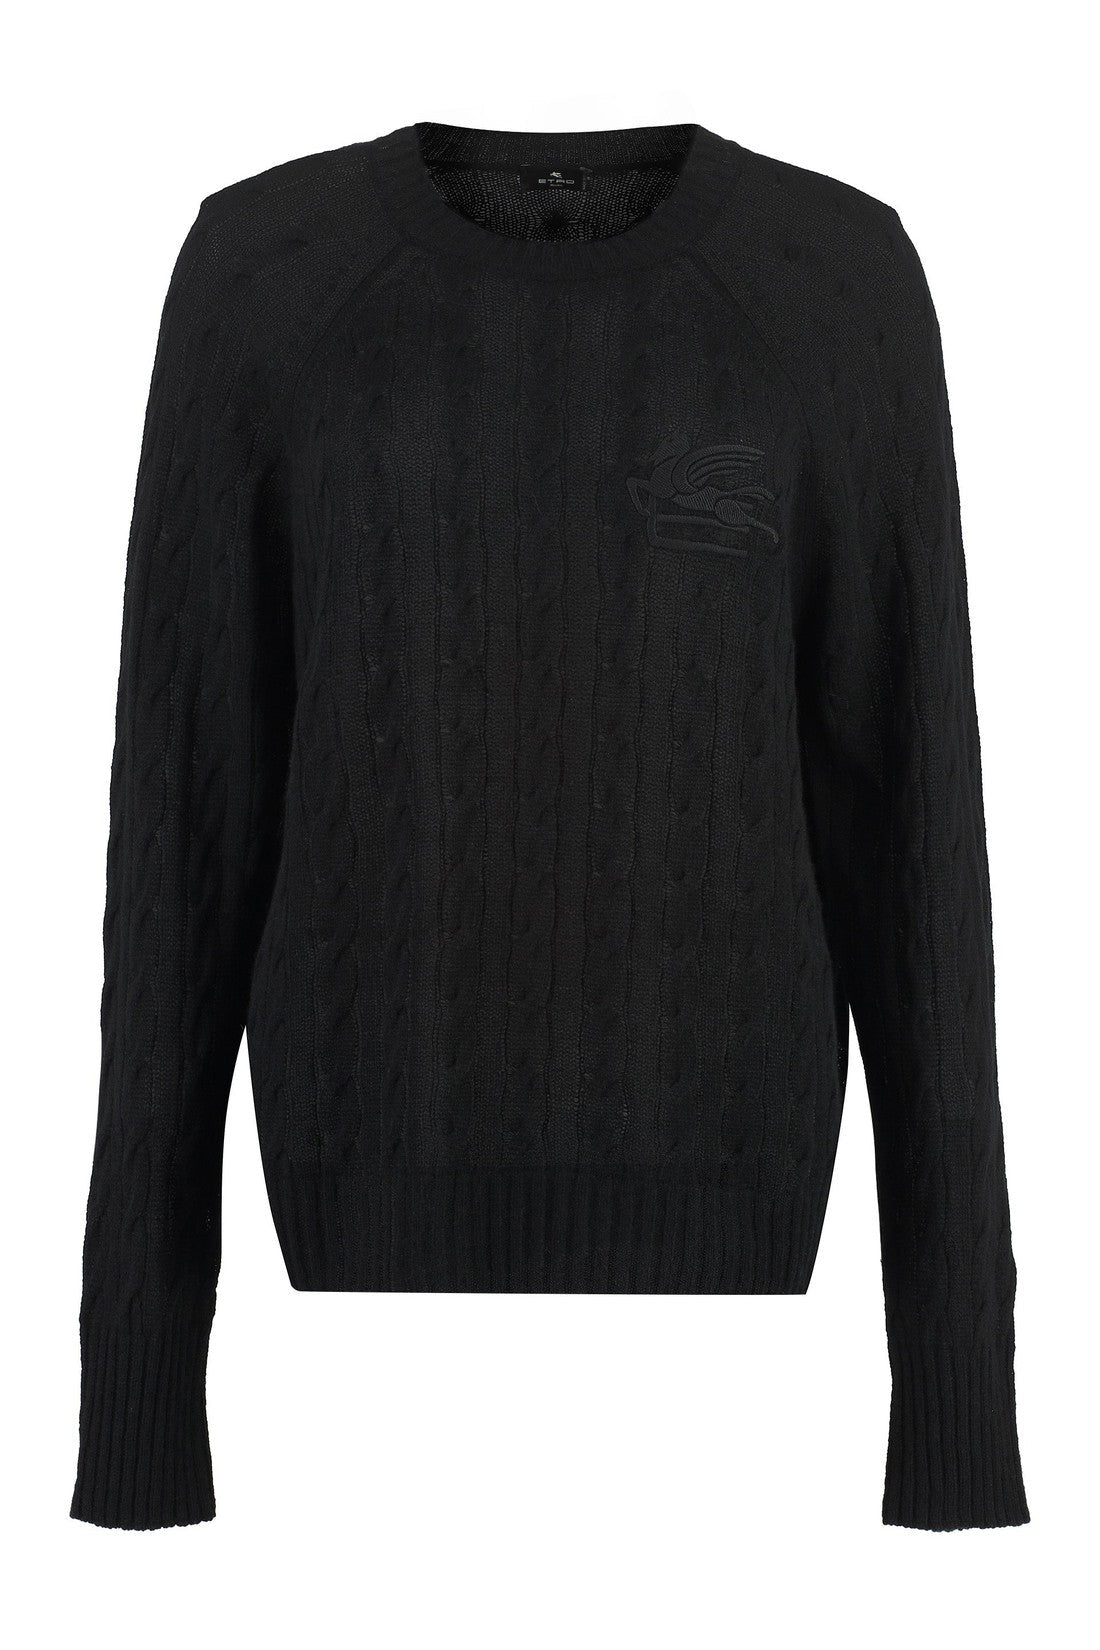 Etro-OUTLET-SALE-Cashmere crew-neck sweater-ARCHIVIST